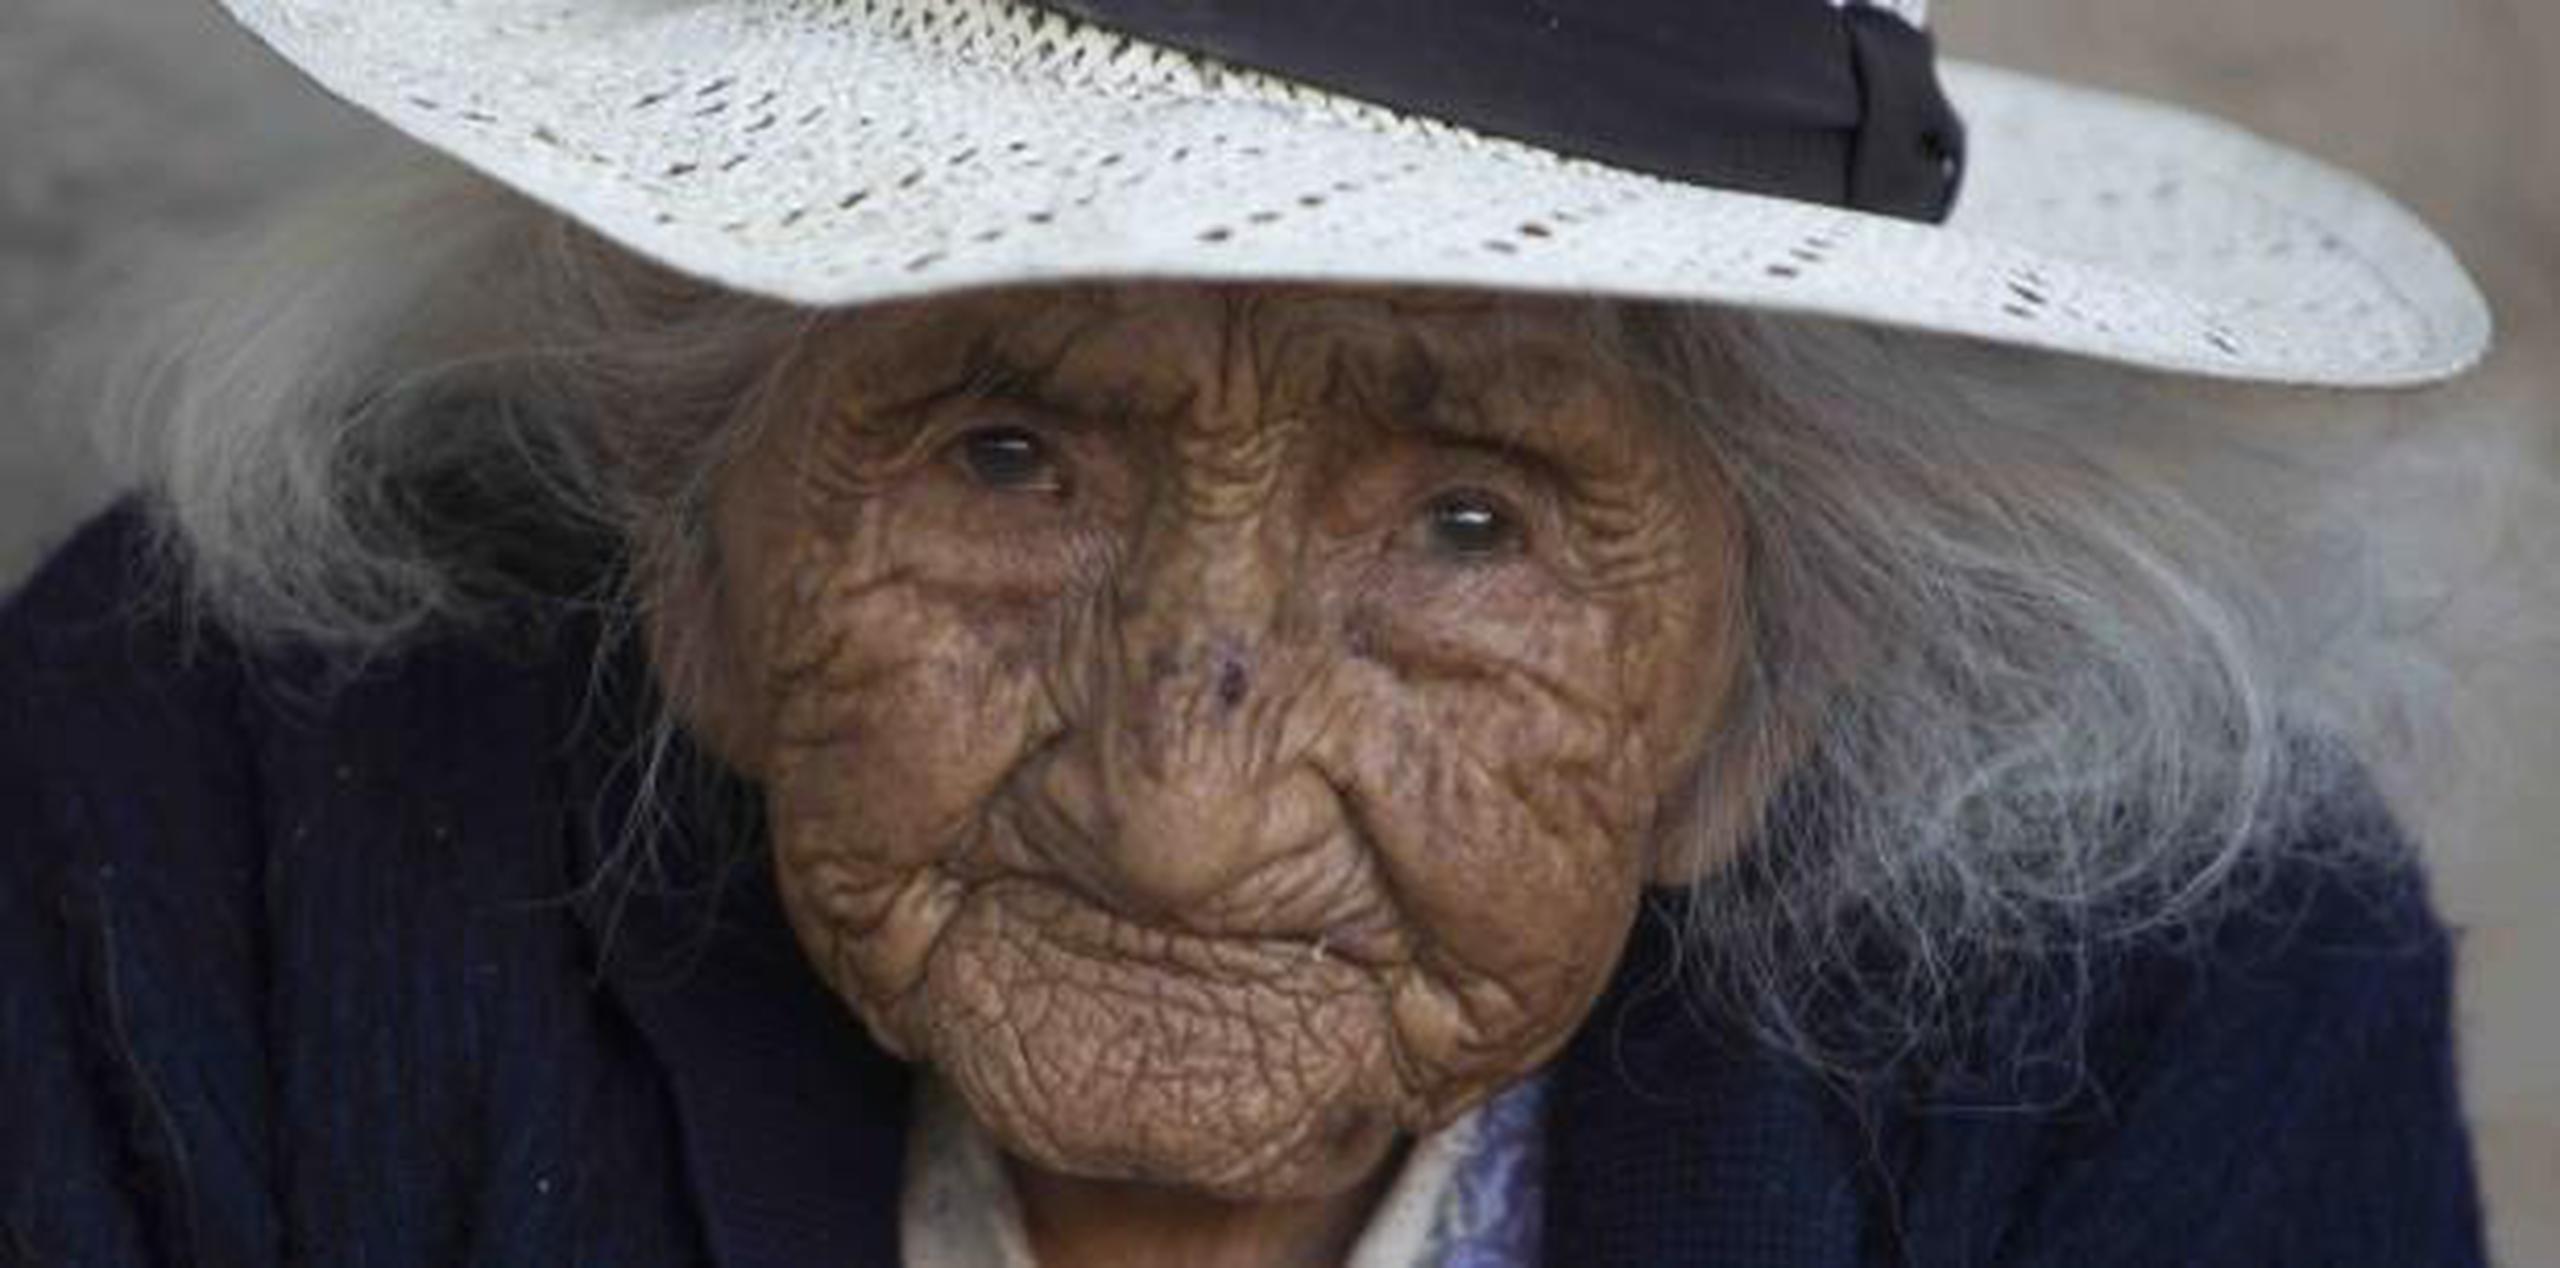 La anciana escucha poco pero sus ojos gastados brillan cuando recibe visitas. (AP / Juan Karita)